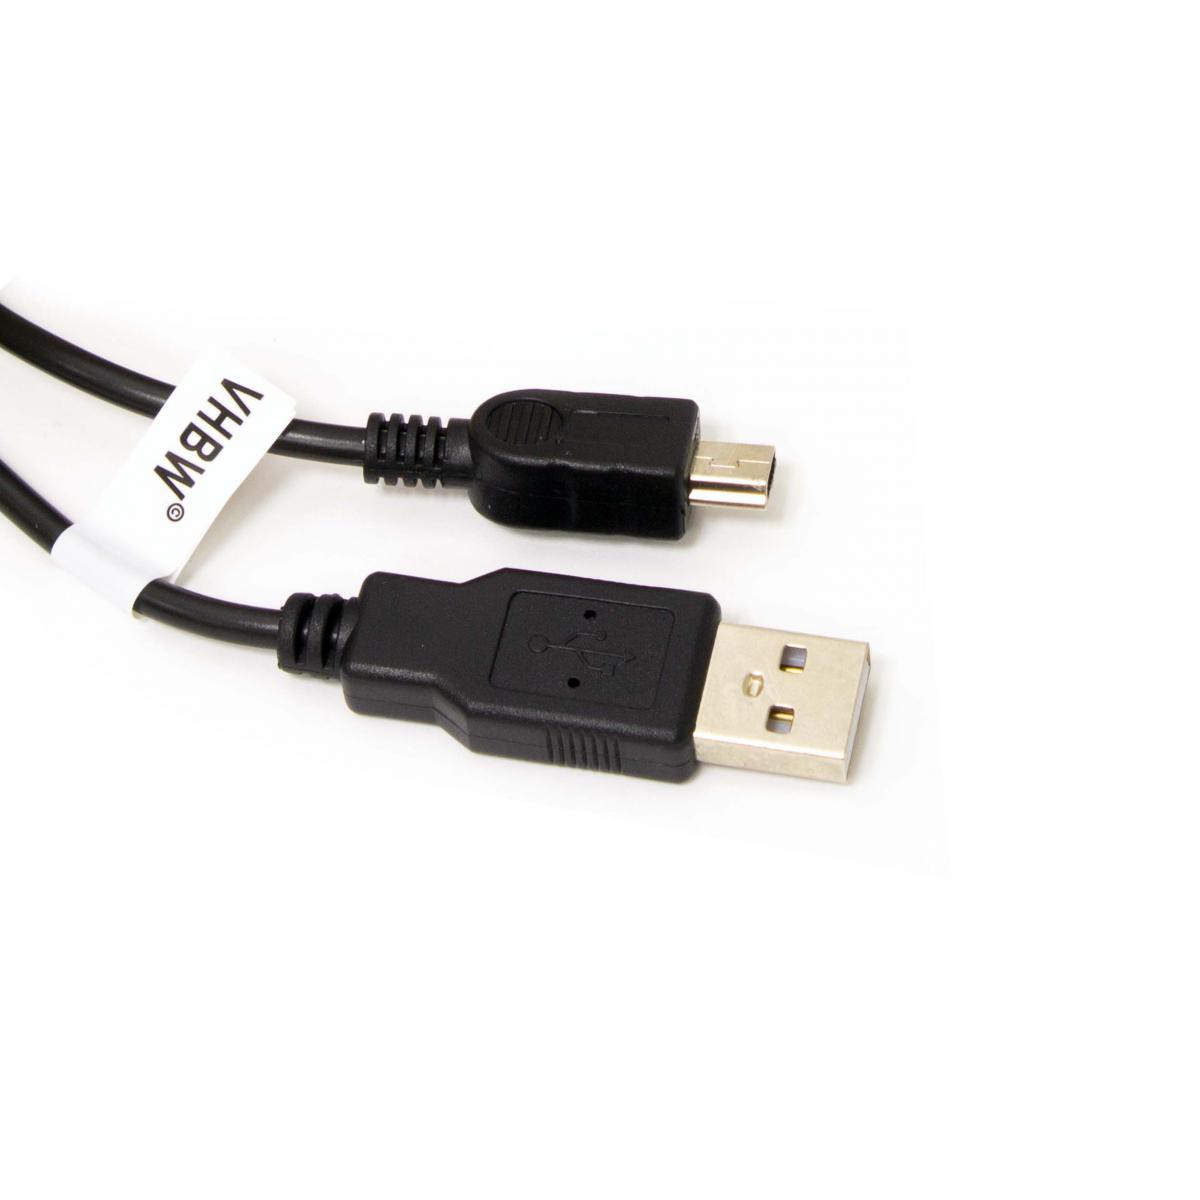 Vhbw - Câble USB A-Mini-B 5 pôles noir/black, longueur 1m, pour BLAUPUNKT LUCCA, remplace Canon IFC-300PCU / Nikon UC-E3 / Pentax I-USB6 / Sony VMC-14UMB2 - Câble antenne